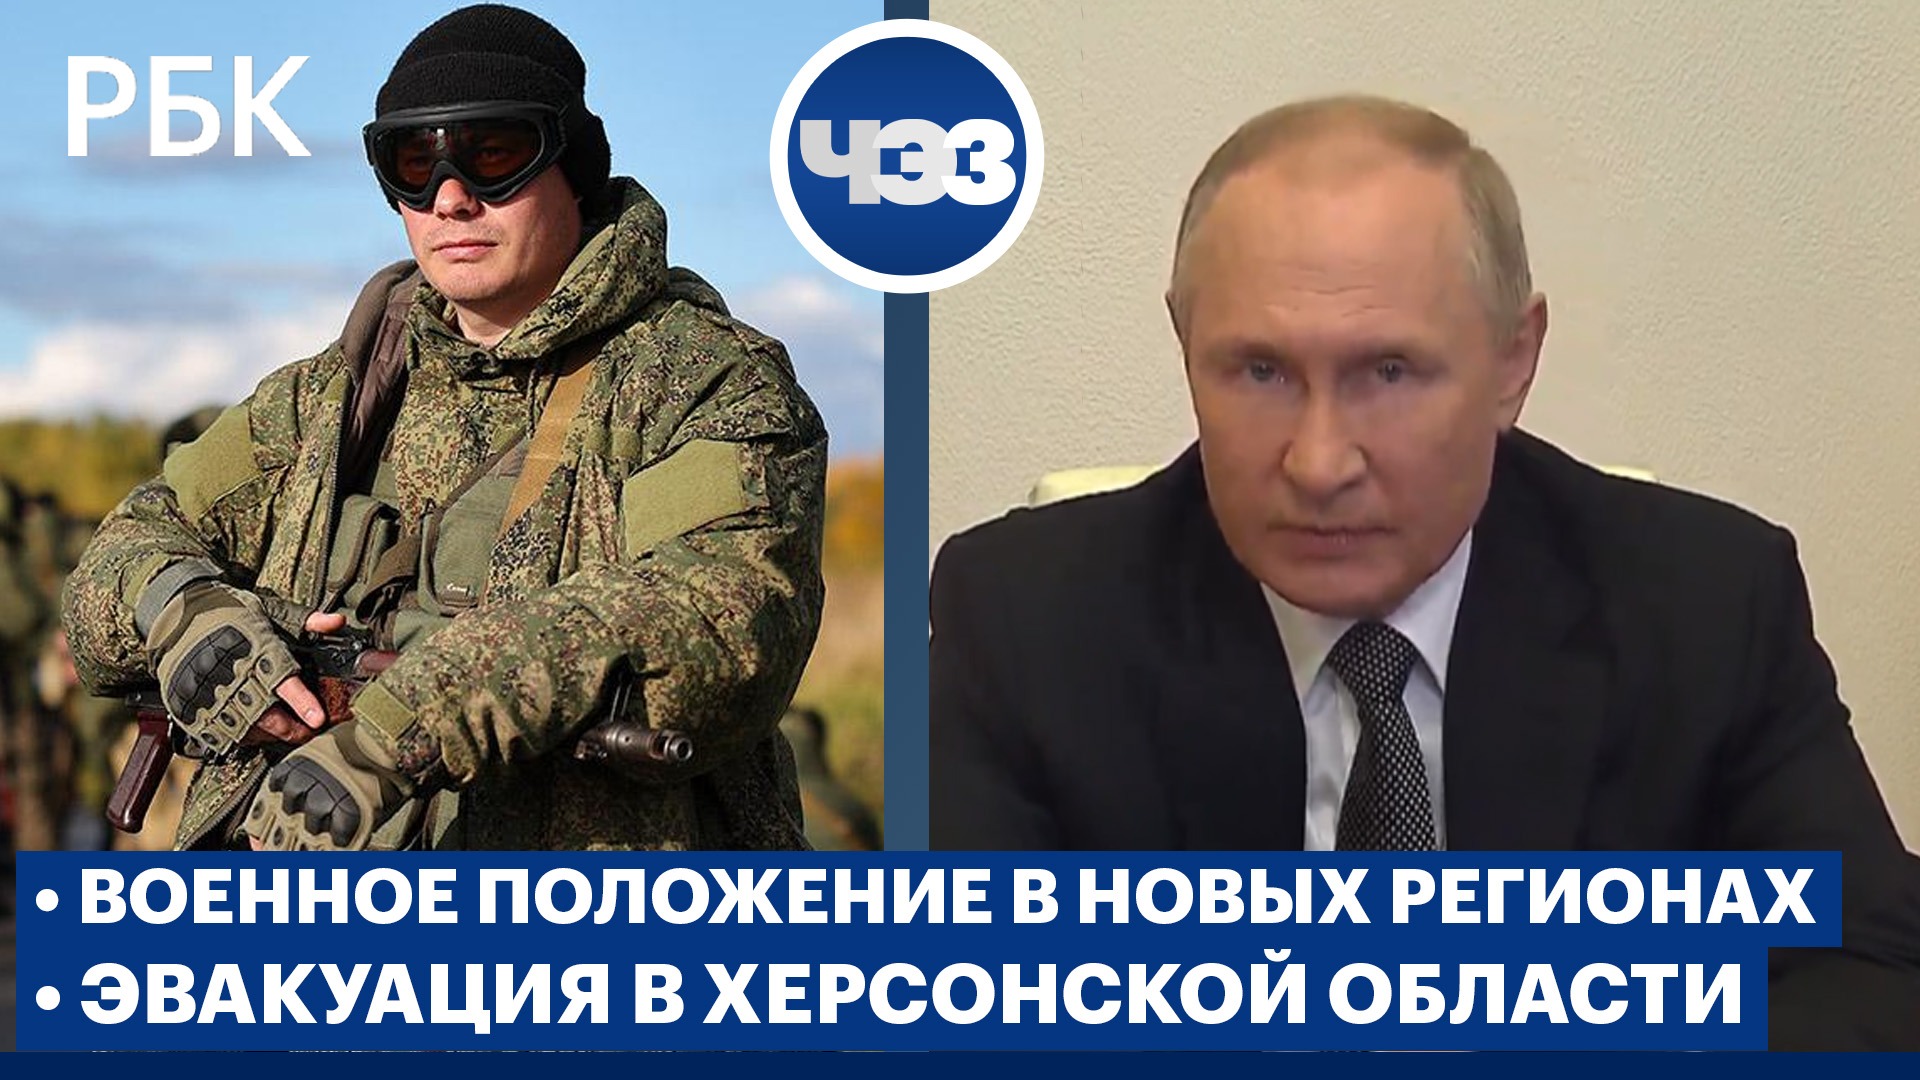 Путин ввел военное положение в четырех новых регионах. Власти сообщили о попытке наступления ВСУ 